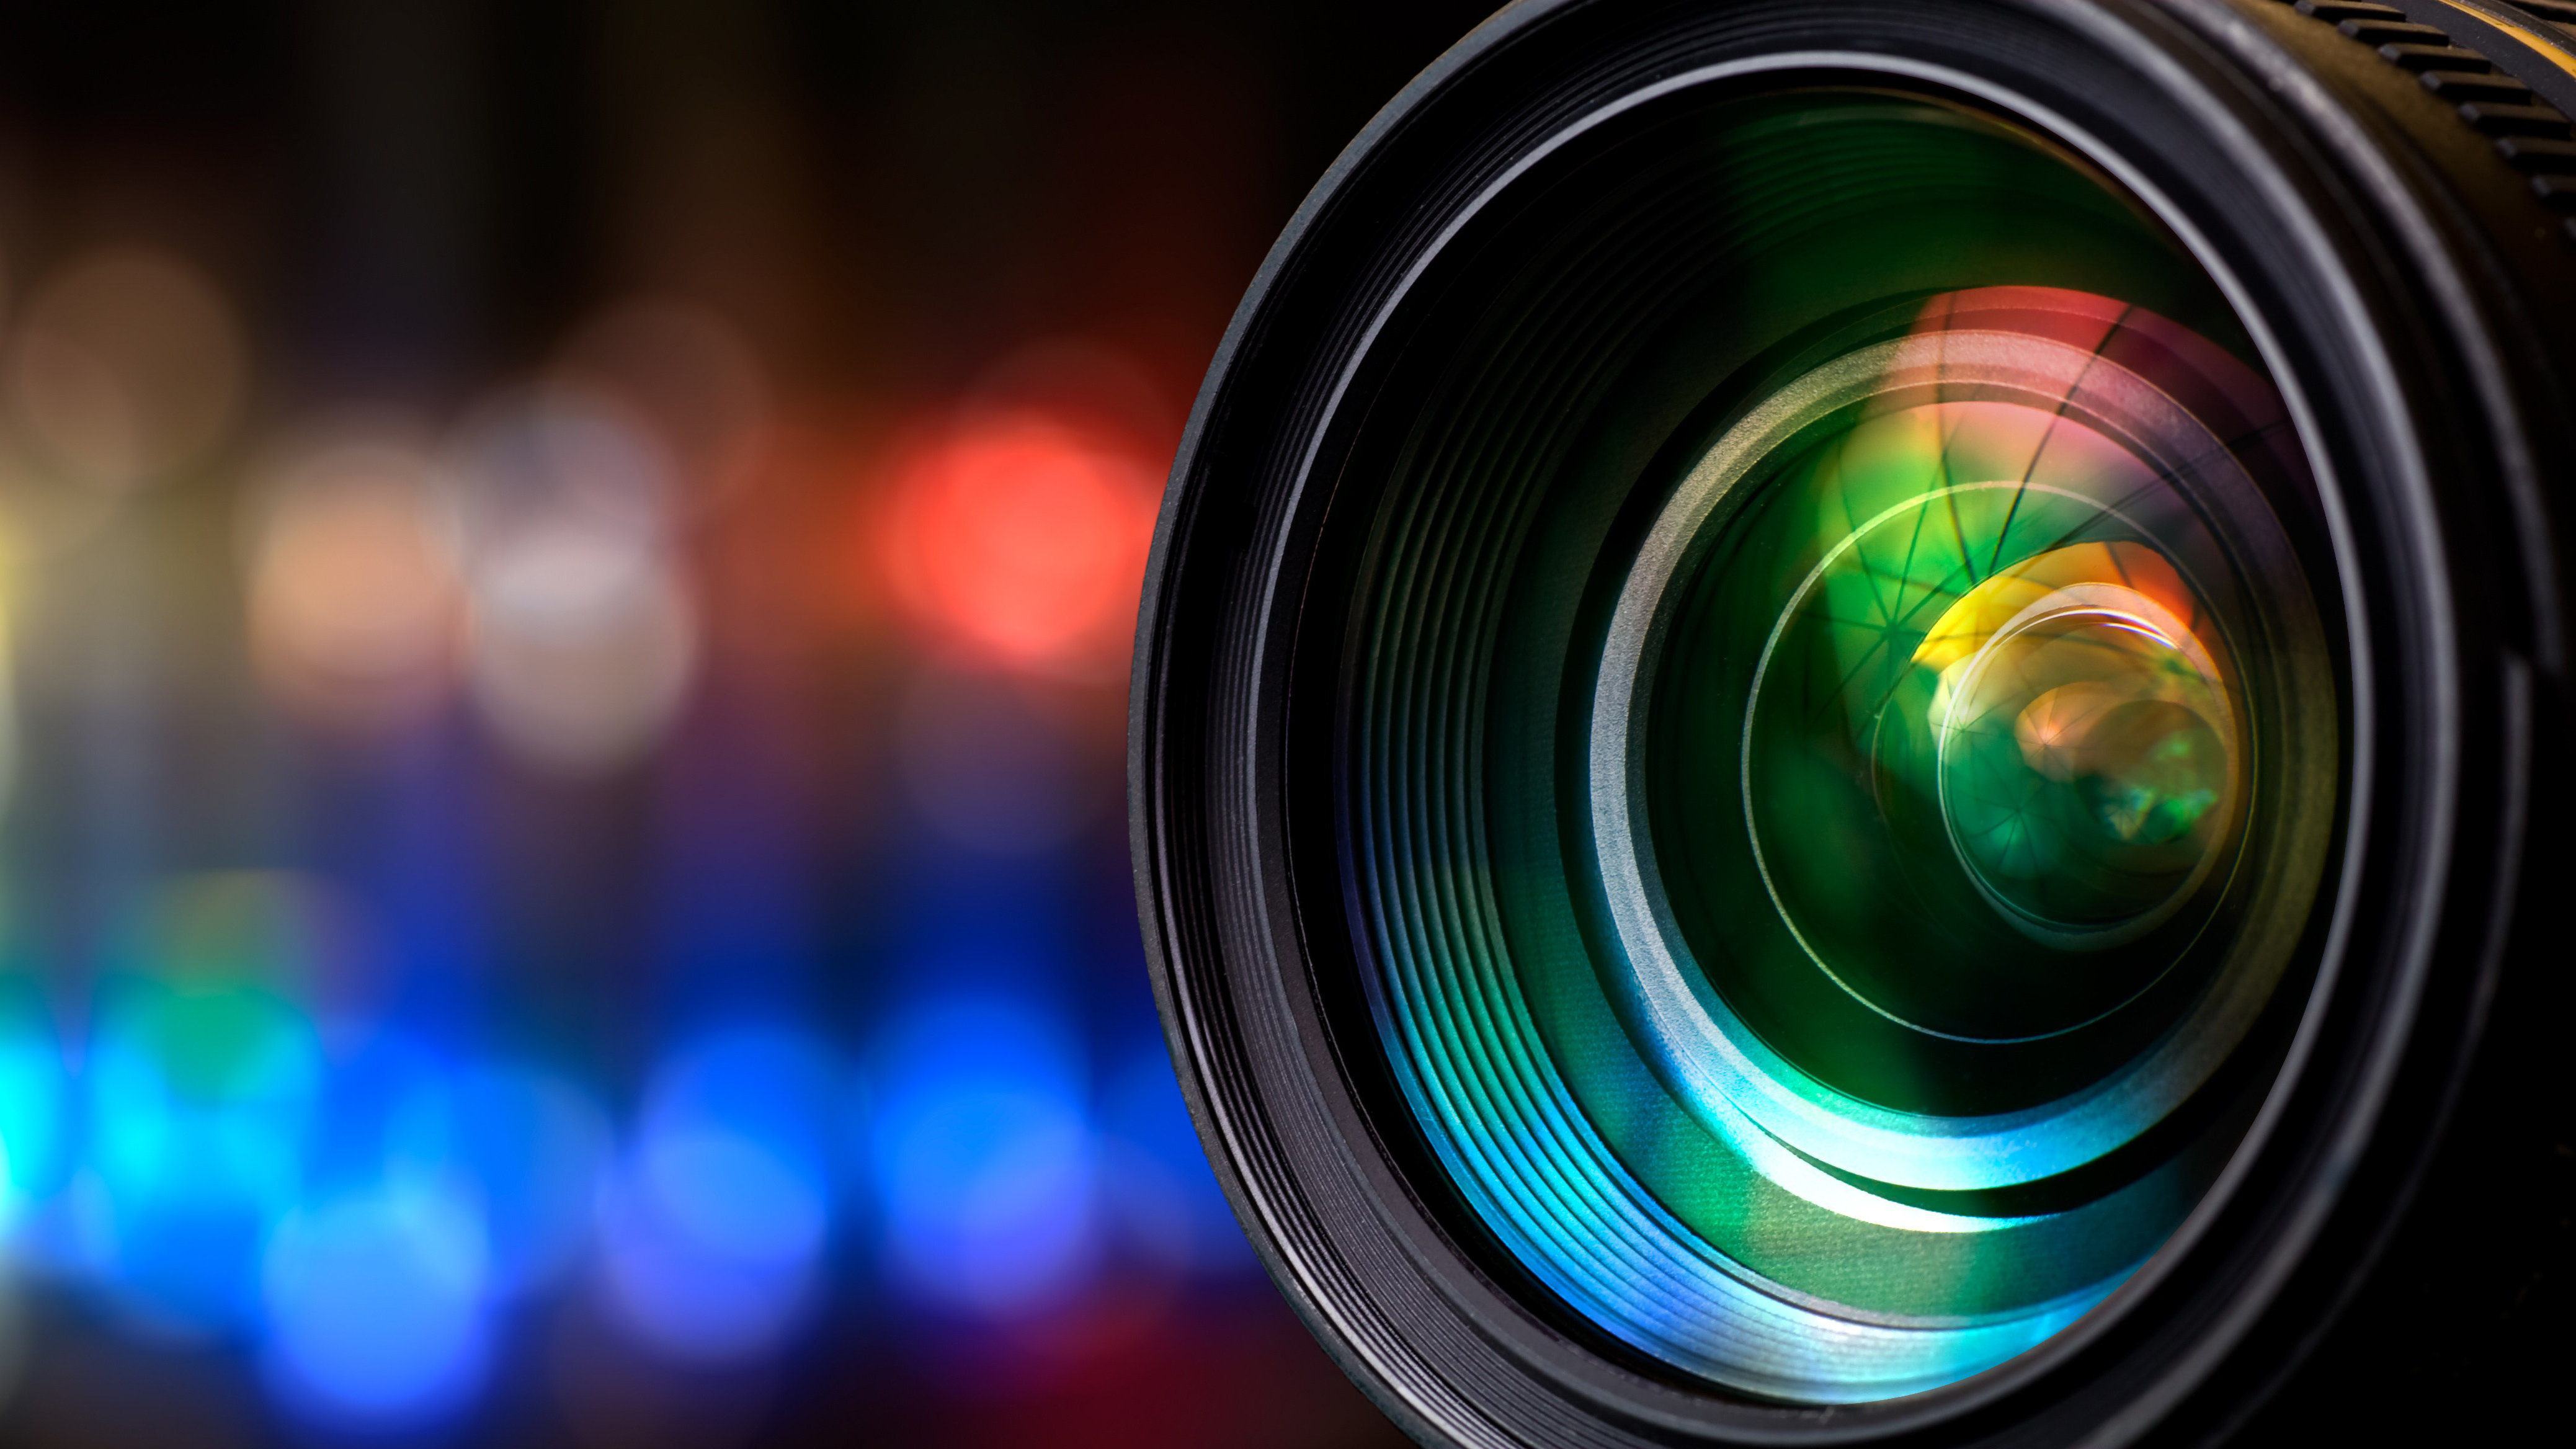 camera lens wallpaper,camera lens,lens,cameras & optics,photograph,colorfulness